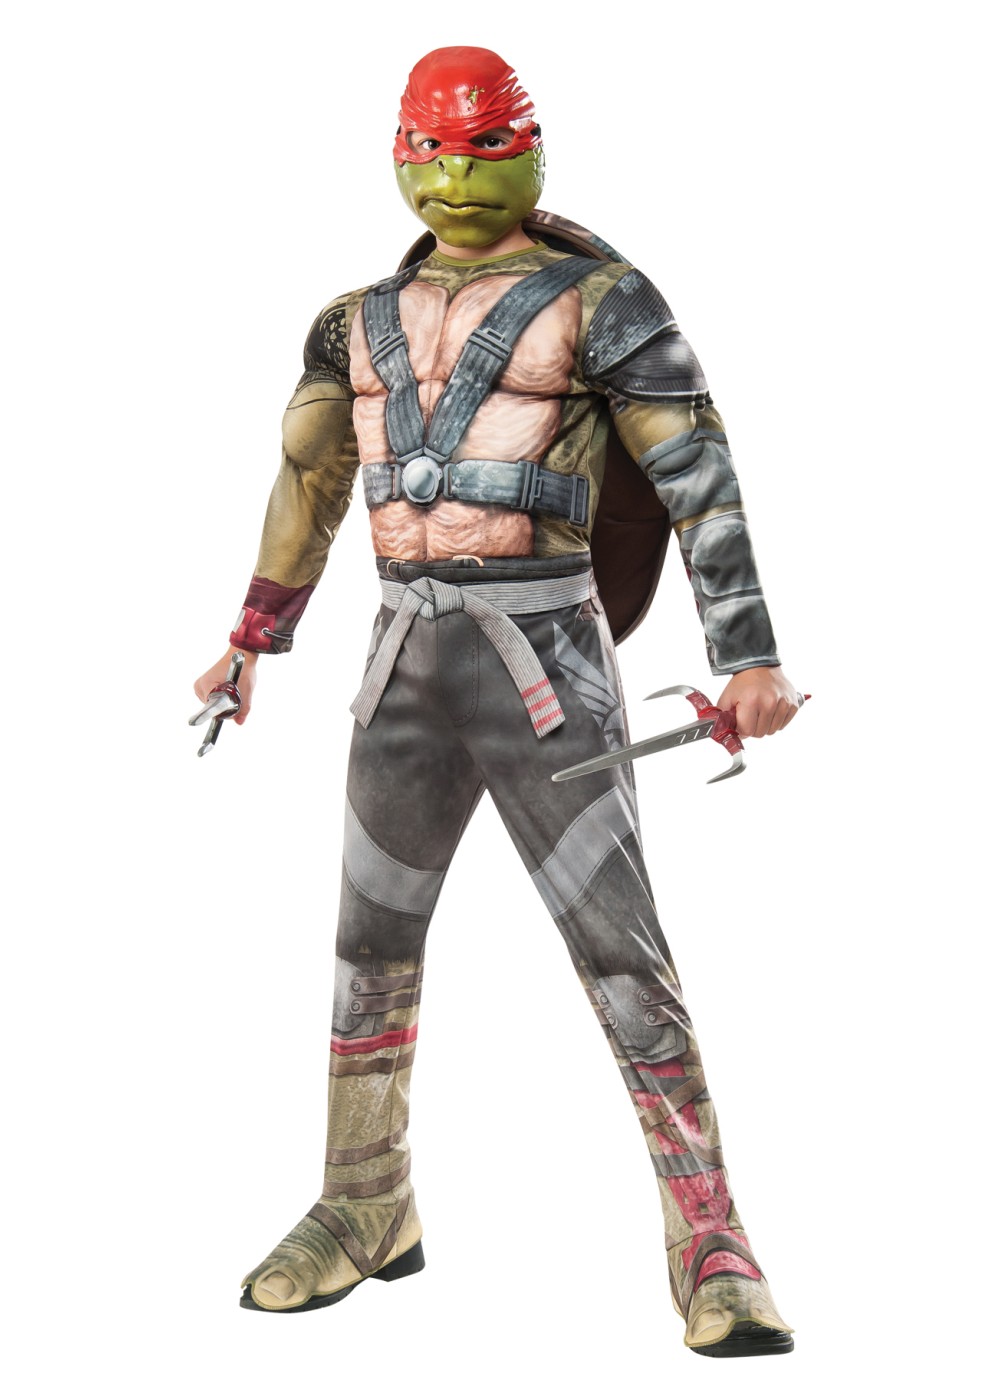 Teenage Mutant Ninja Turtles: Out Of The Shadows Raphael Boys Costume